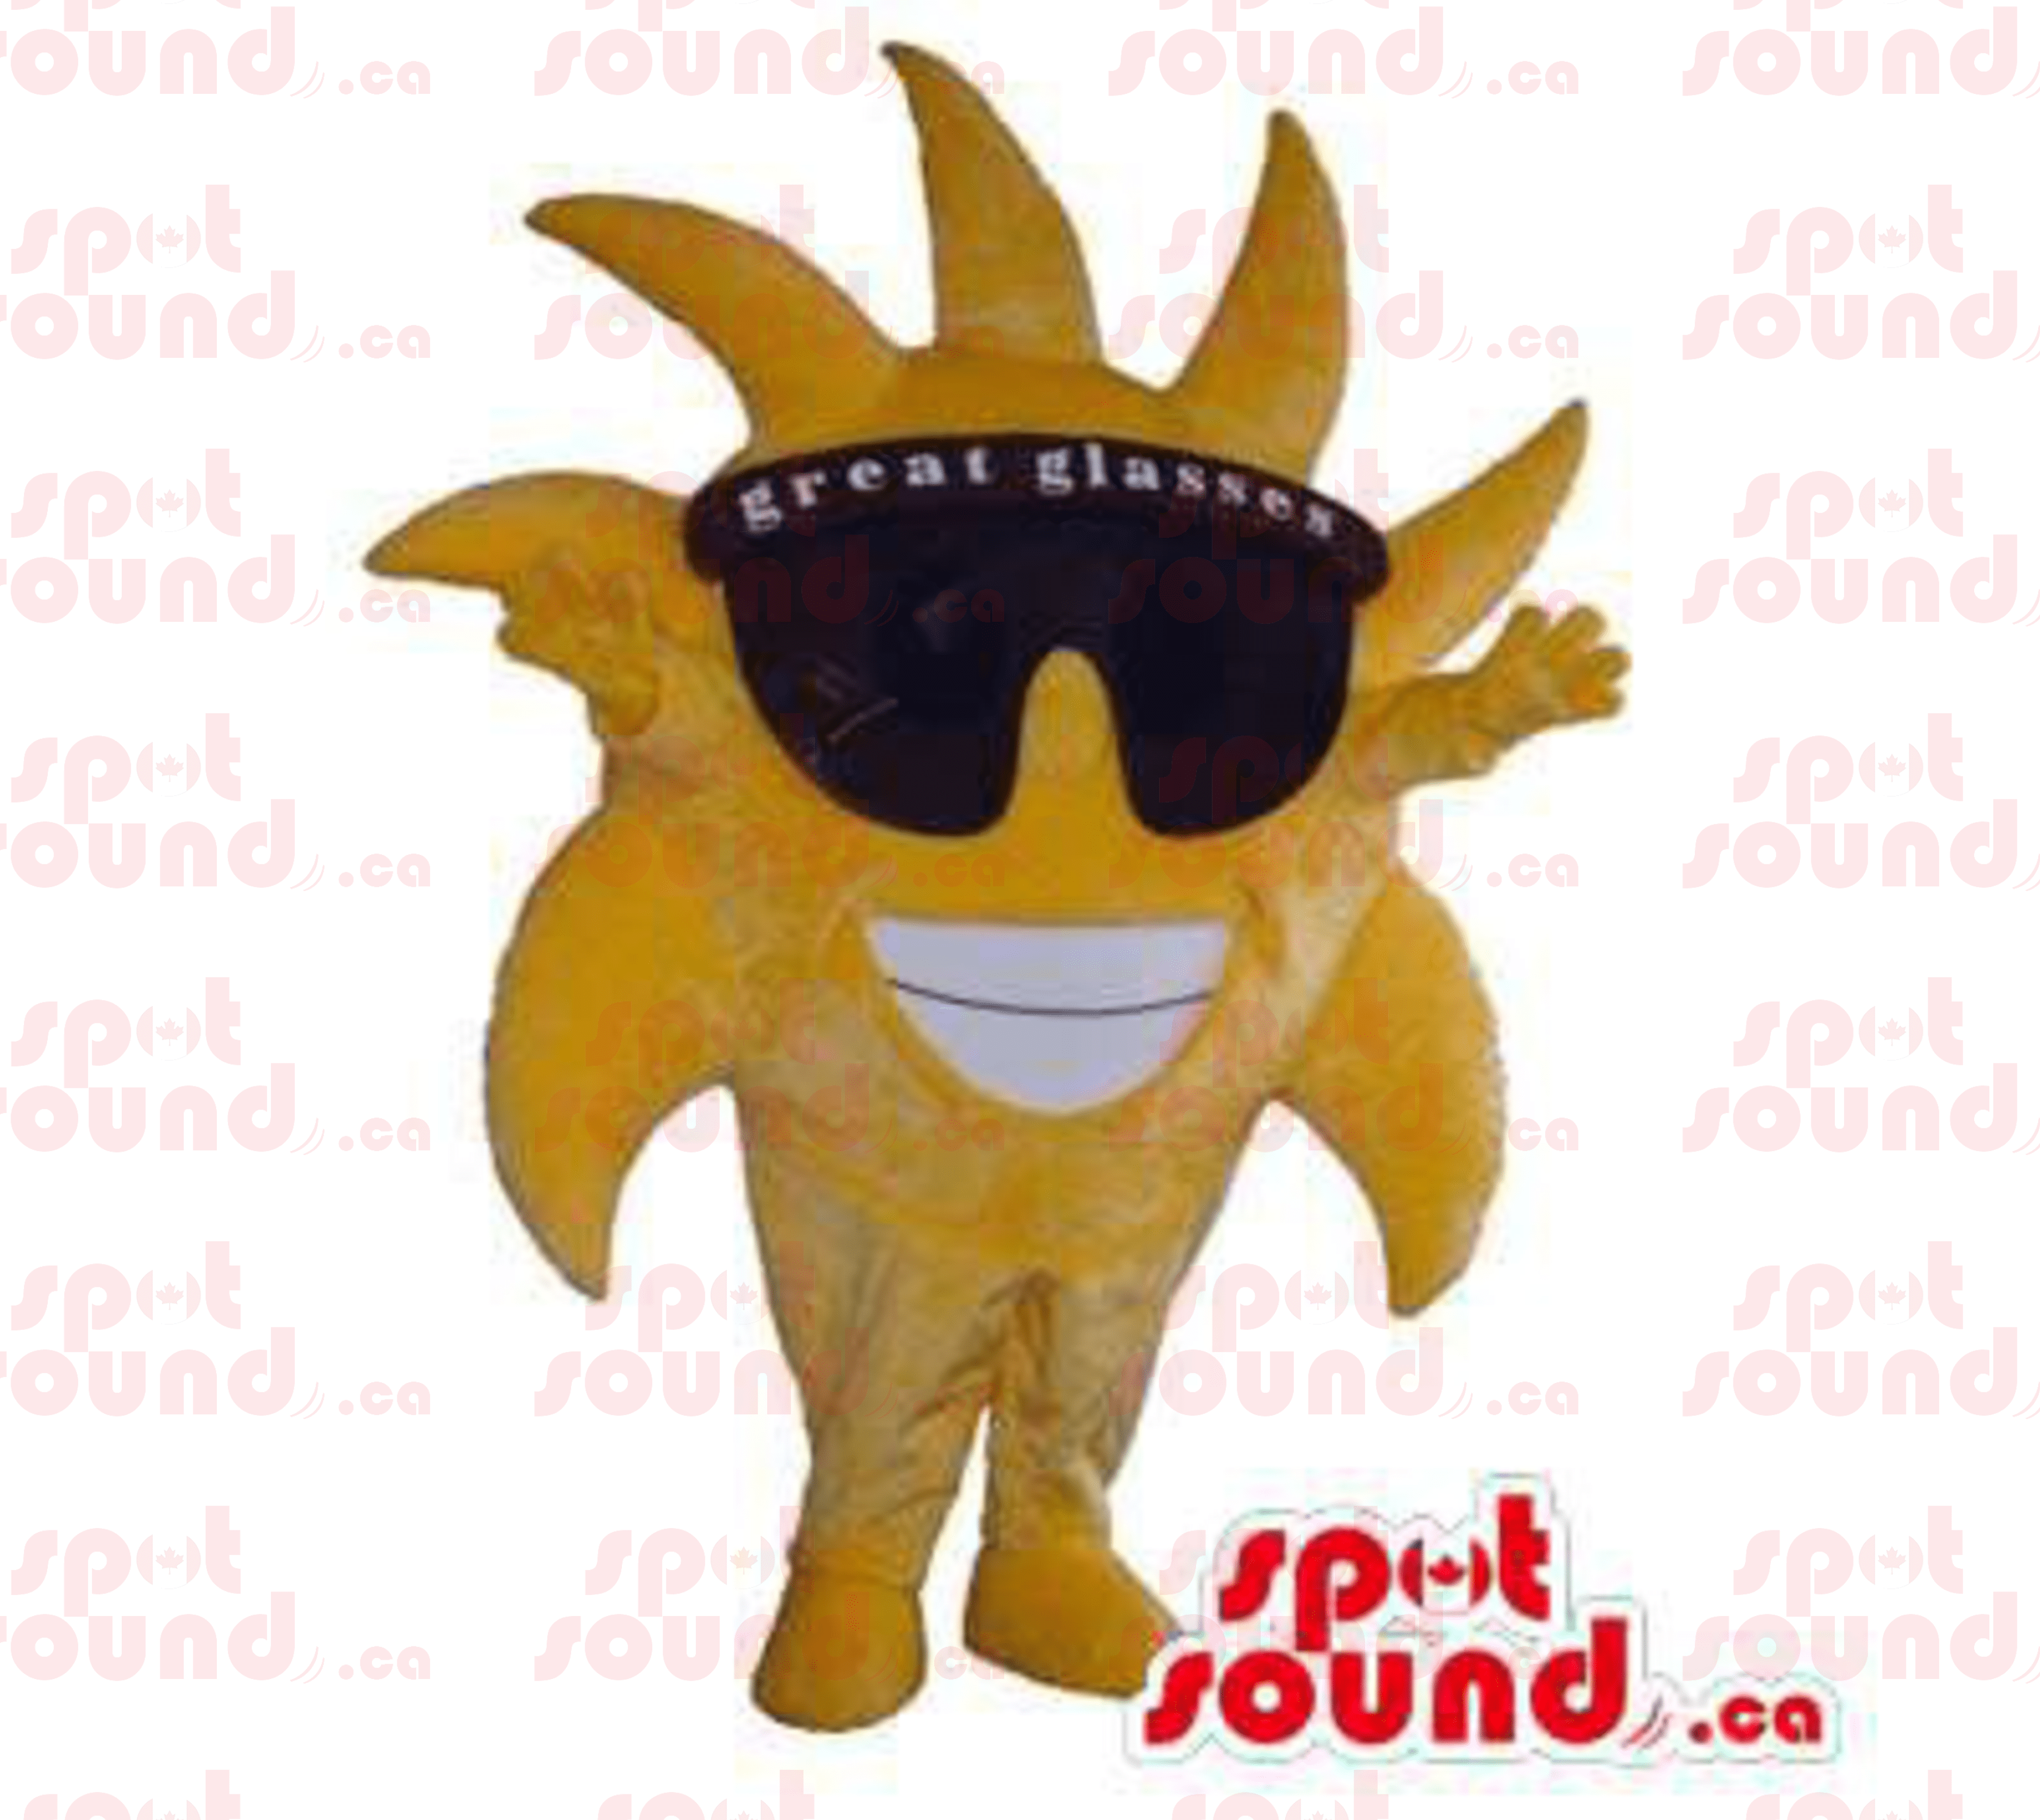 mascot pilot square sunglasses